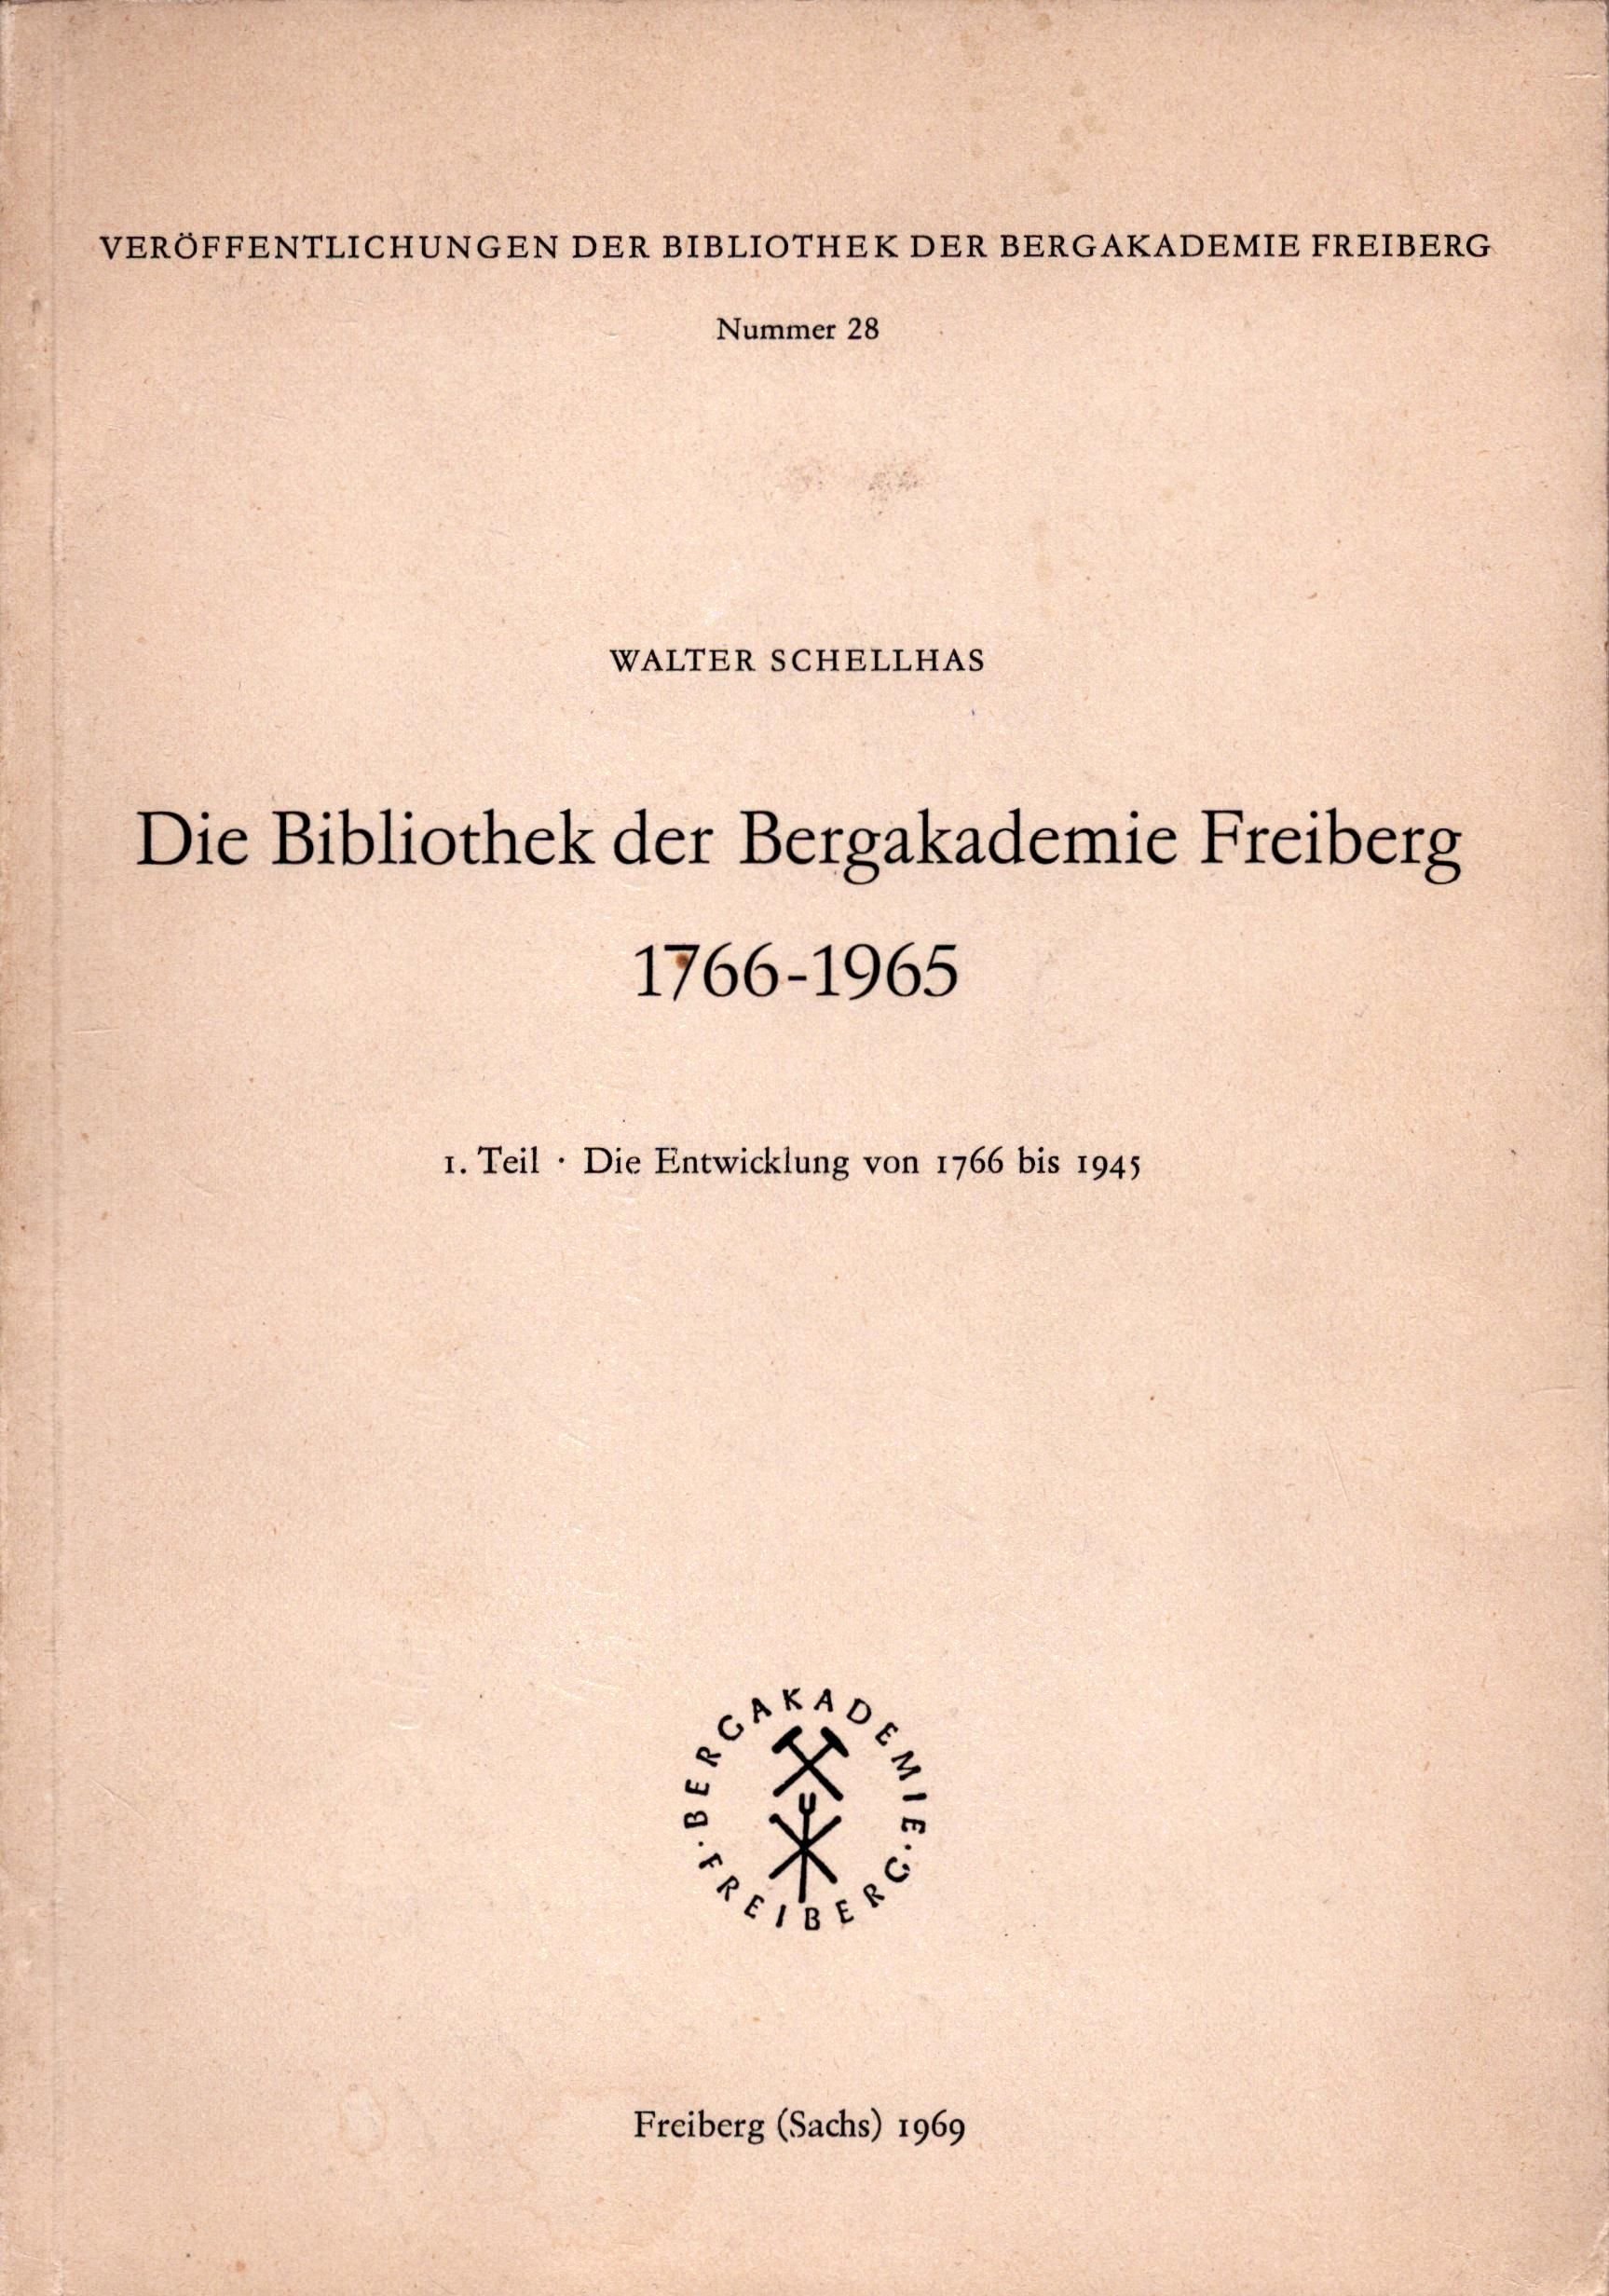 Die Bibliothek der Bergakademie Freiberg 1766 - 1965 (Archiv SAXONIA-FREIBERG-STIFTUNG CC BY-NC-SA)